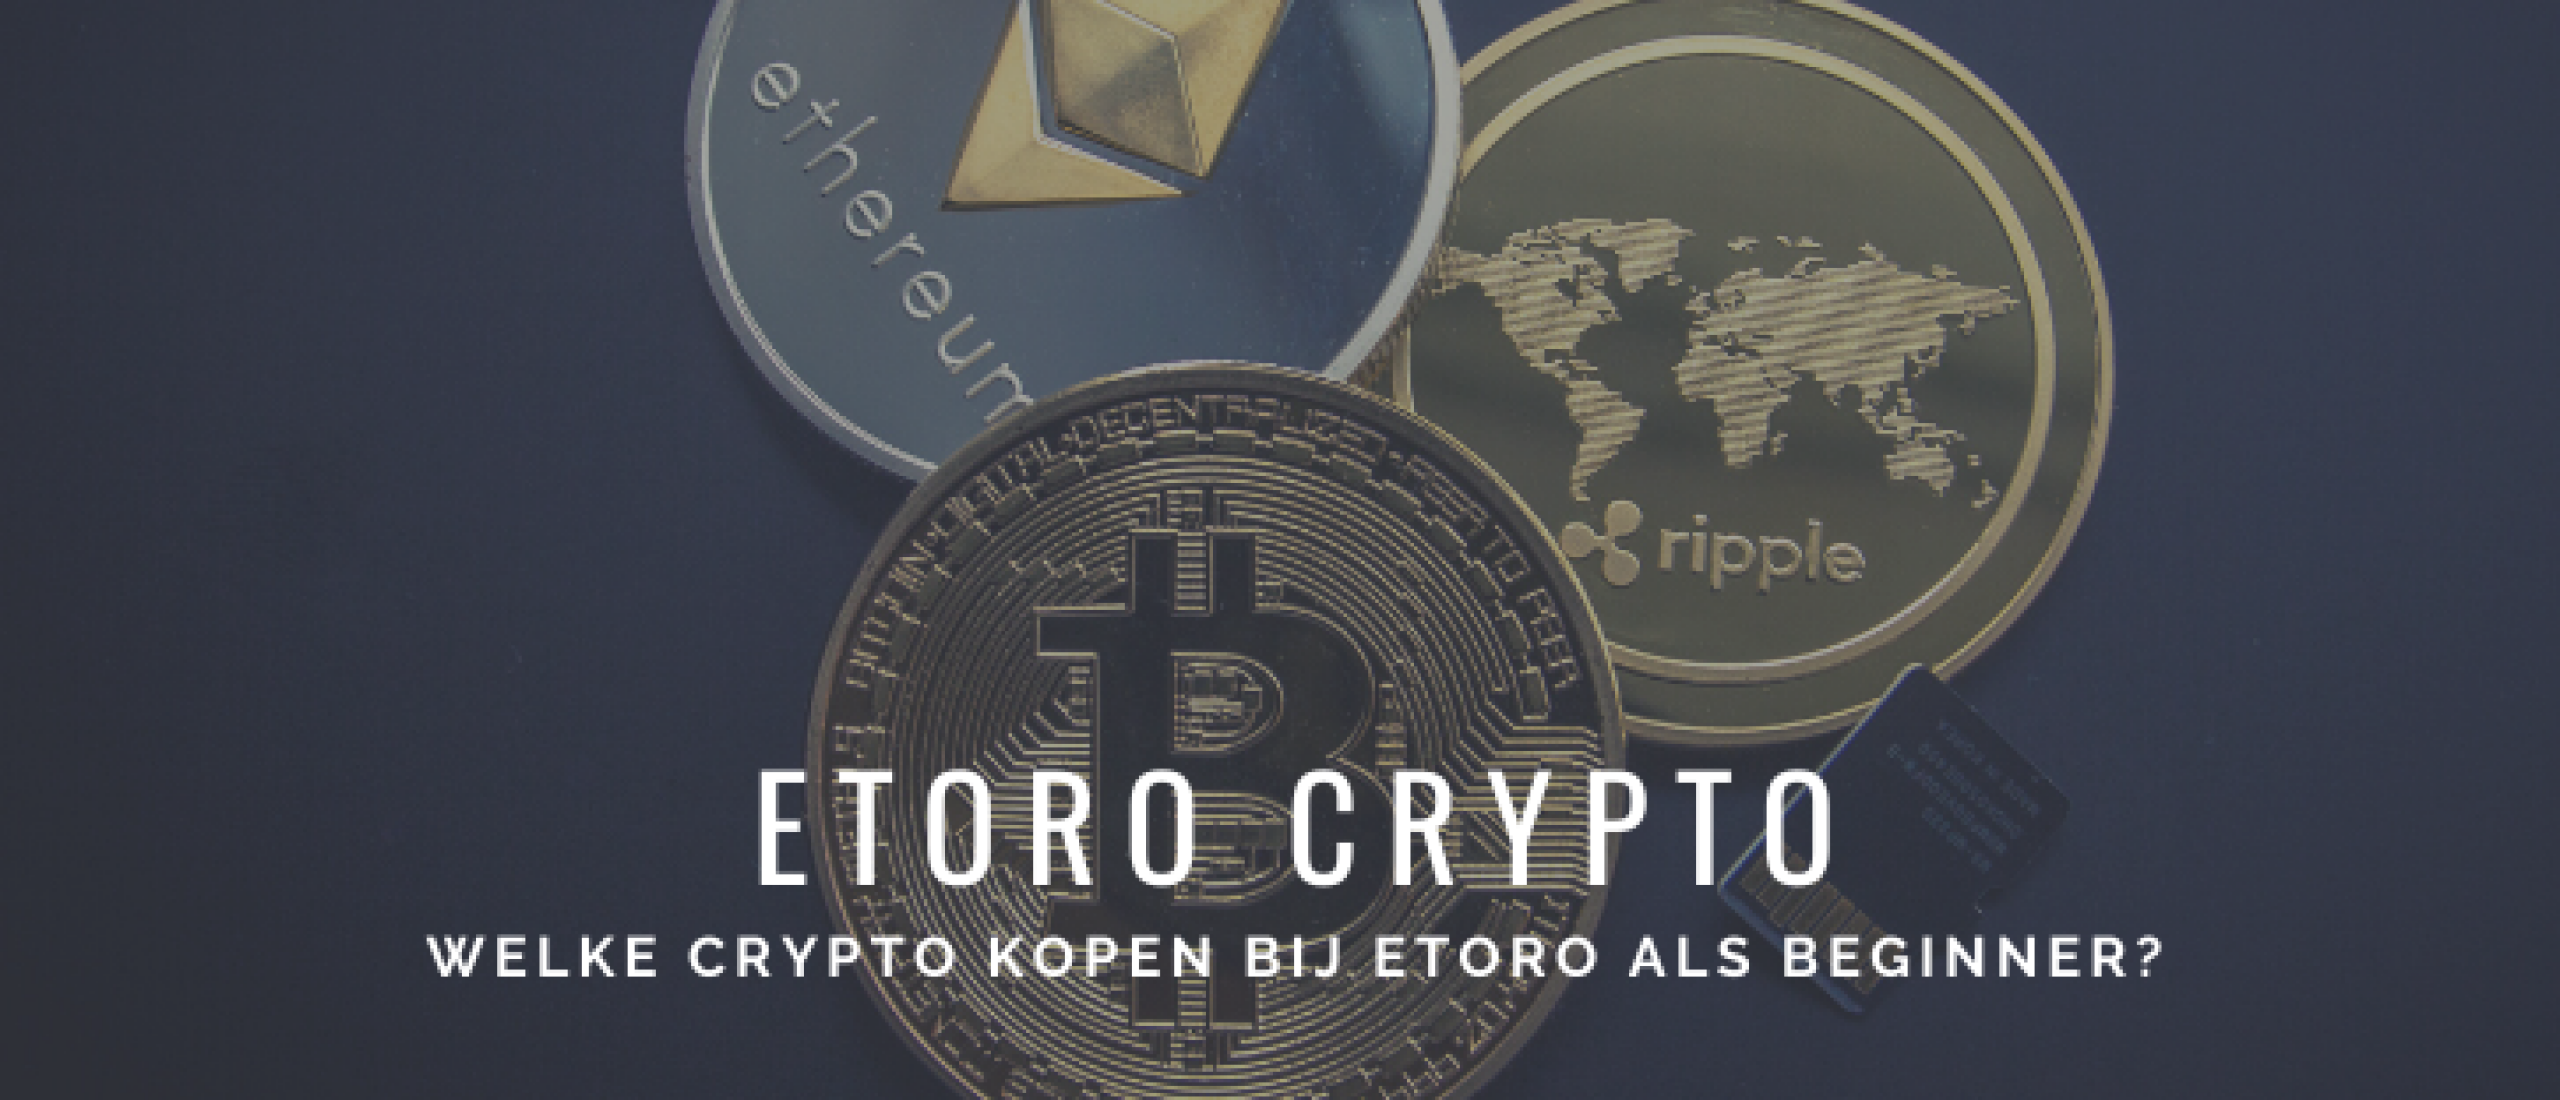 Welke Crypto Kopen bij eToro als Beginner? Tips Goede Start